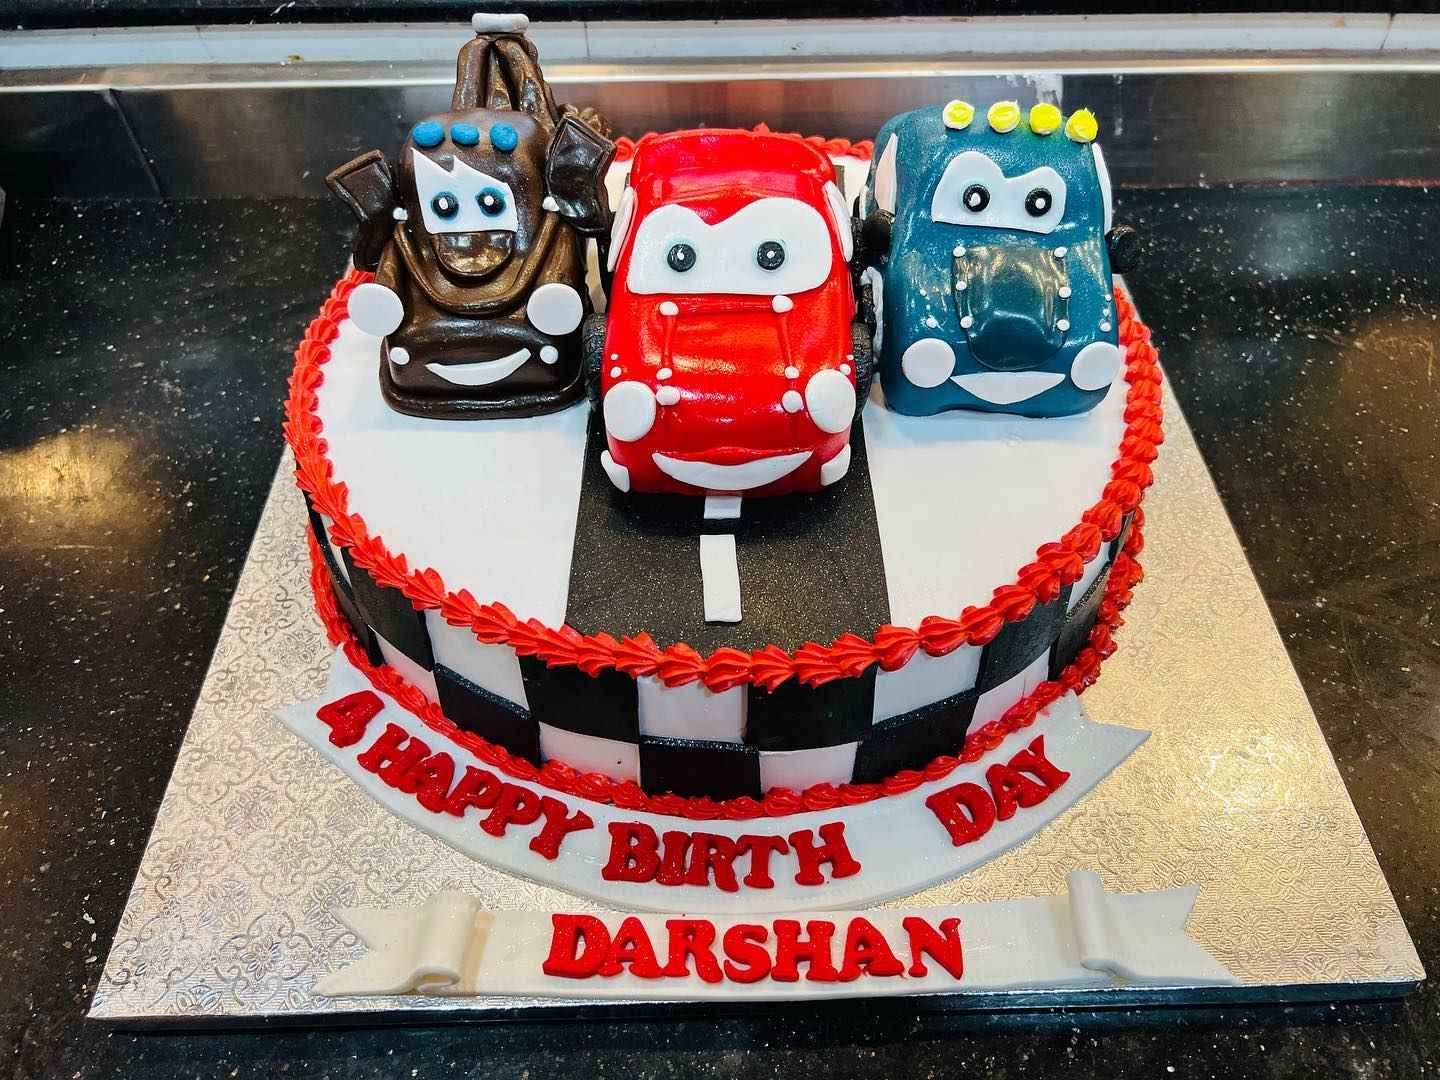 Car theme cake